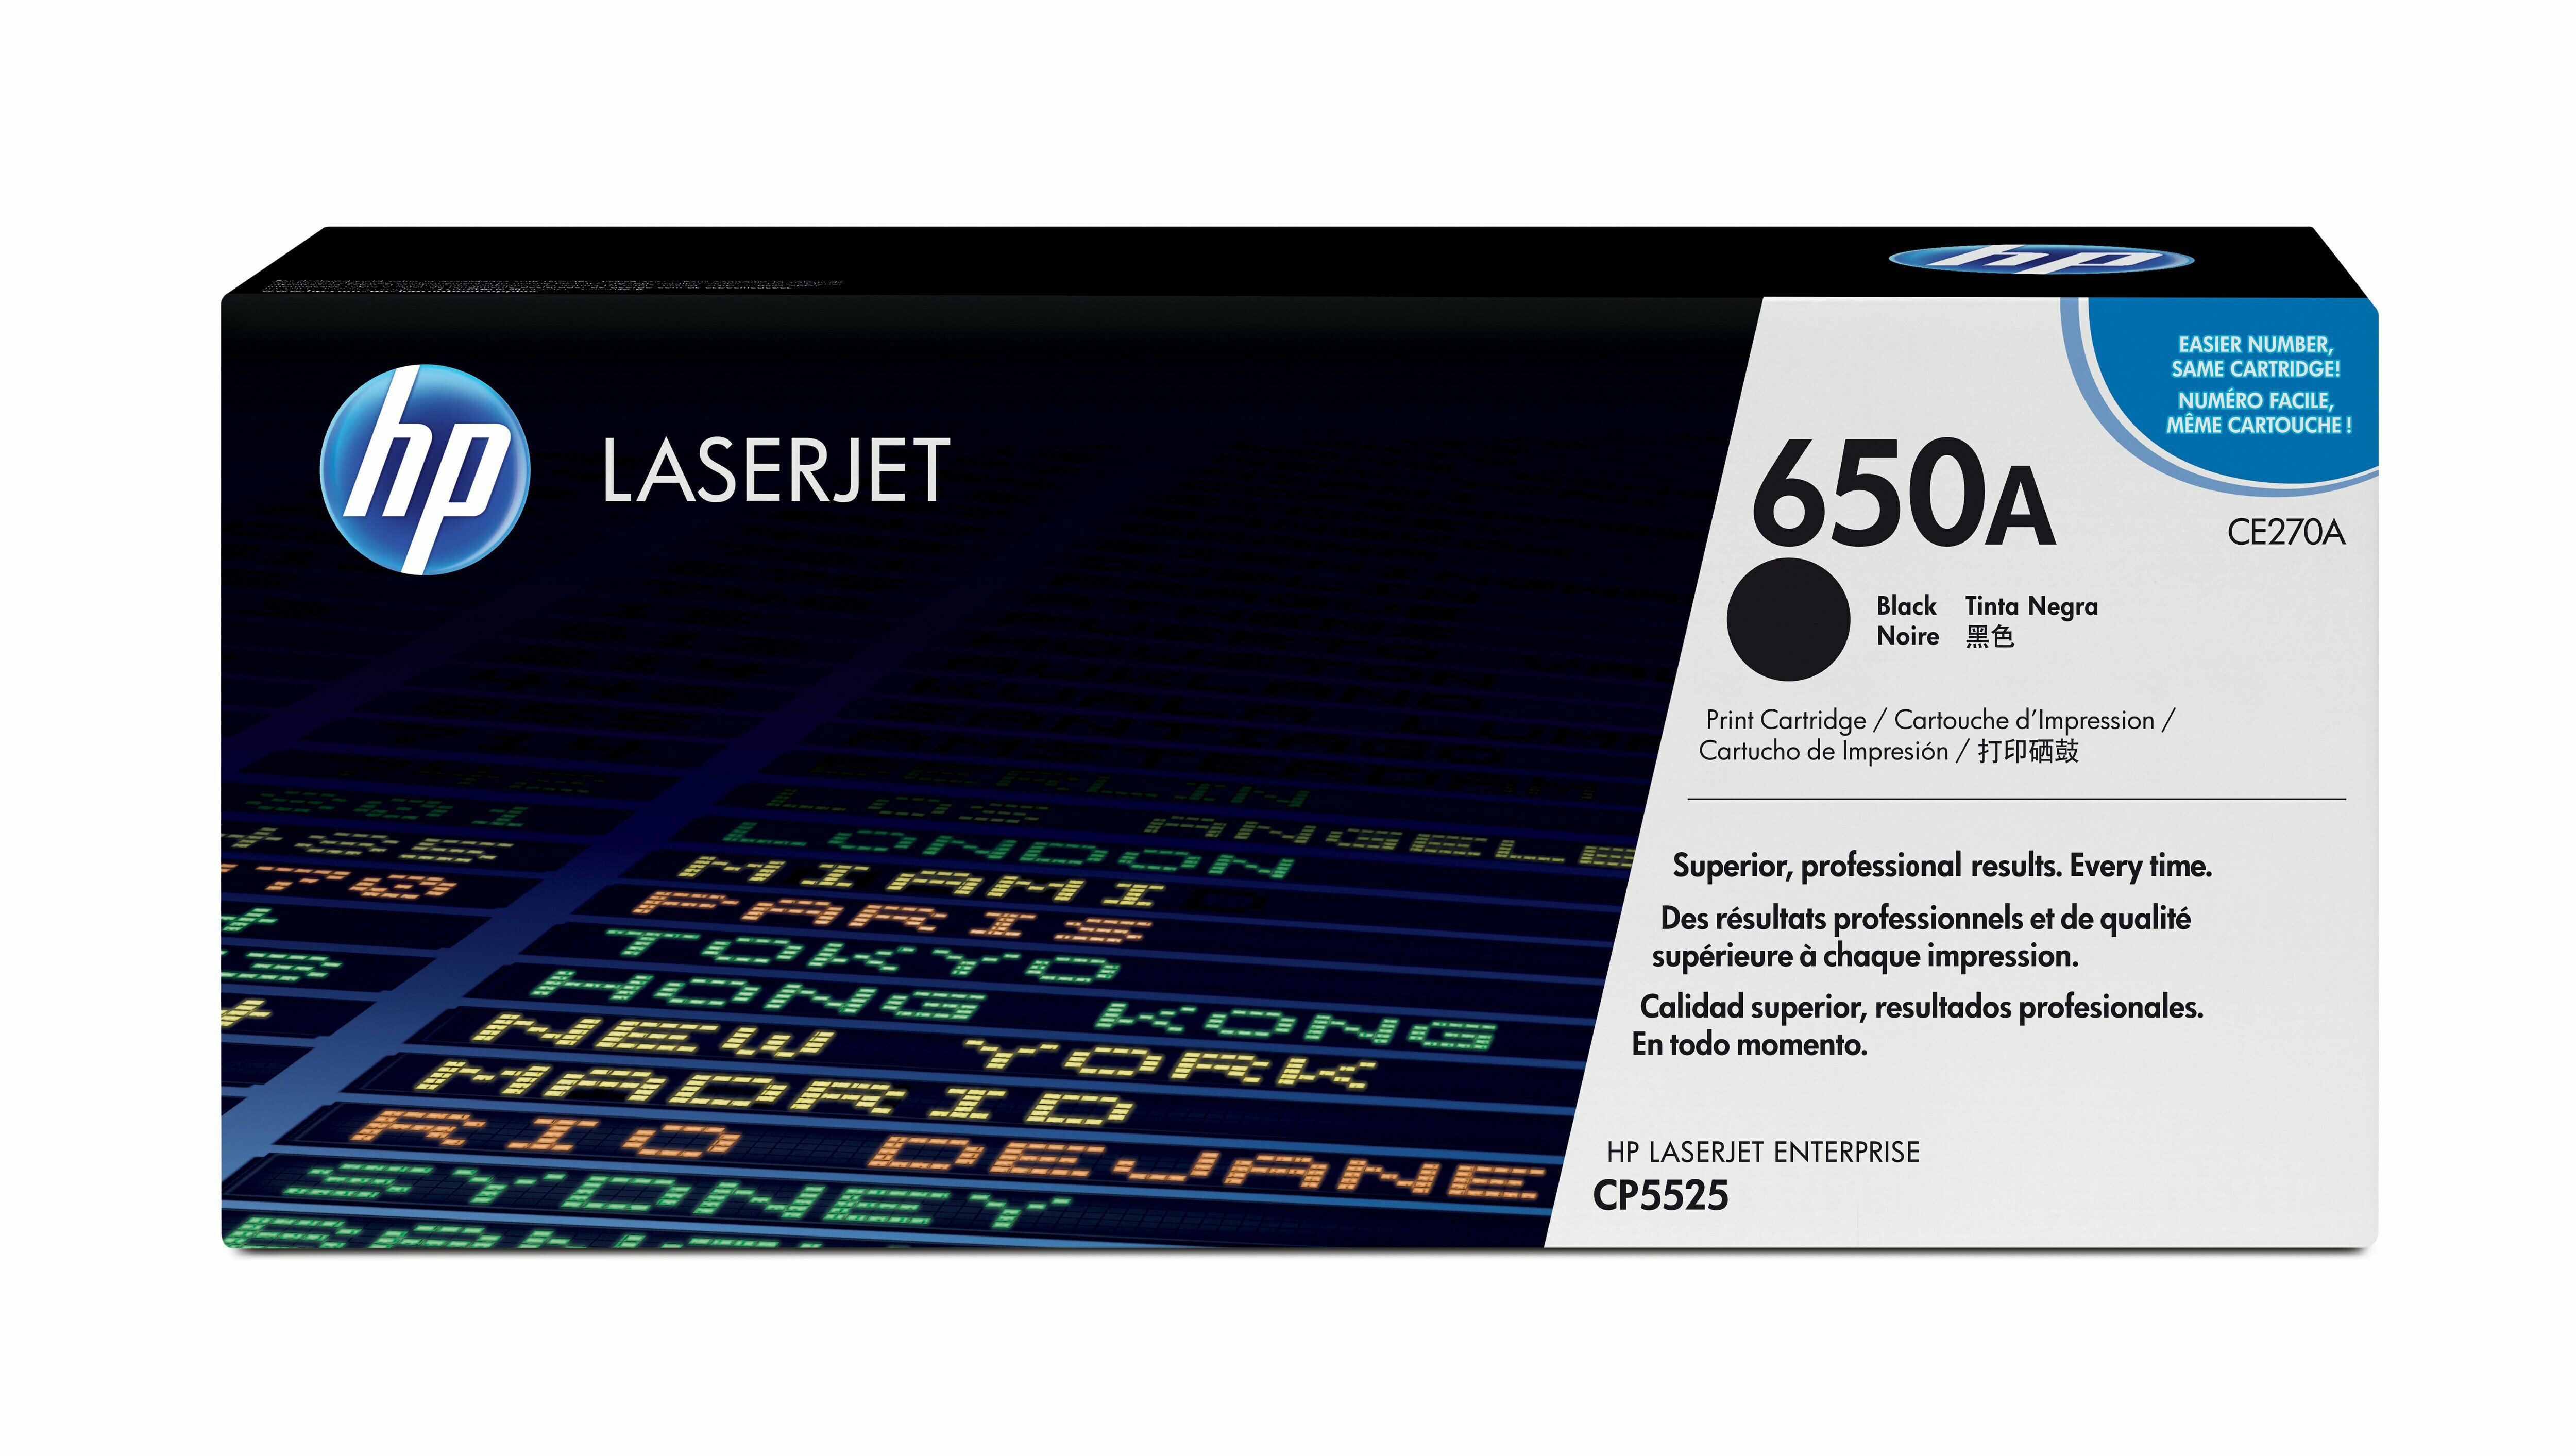 Картридж для печати HP Картридж HP 650A CE270A вид печати лазерный, цвет Черный, емкость